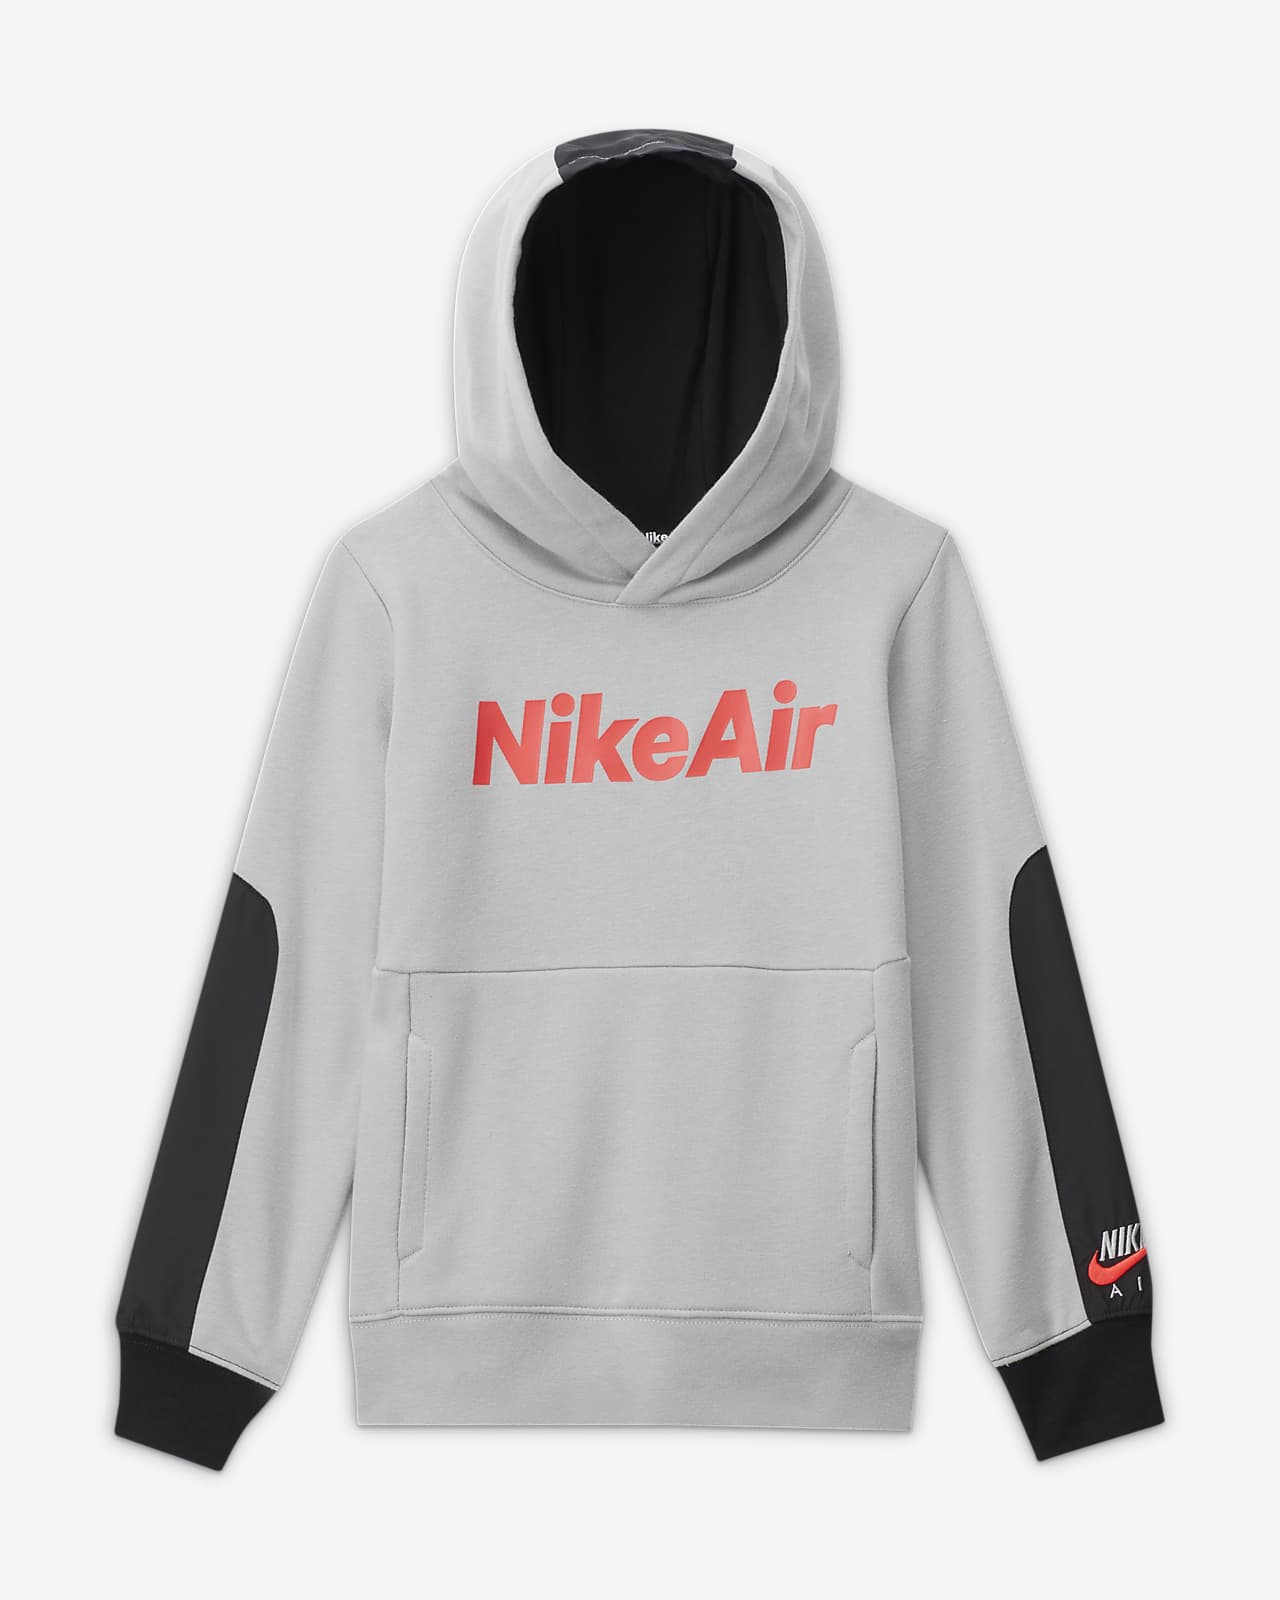 nike air loose fit hoodie